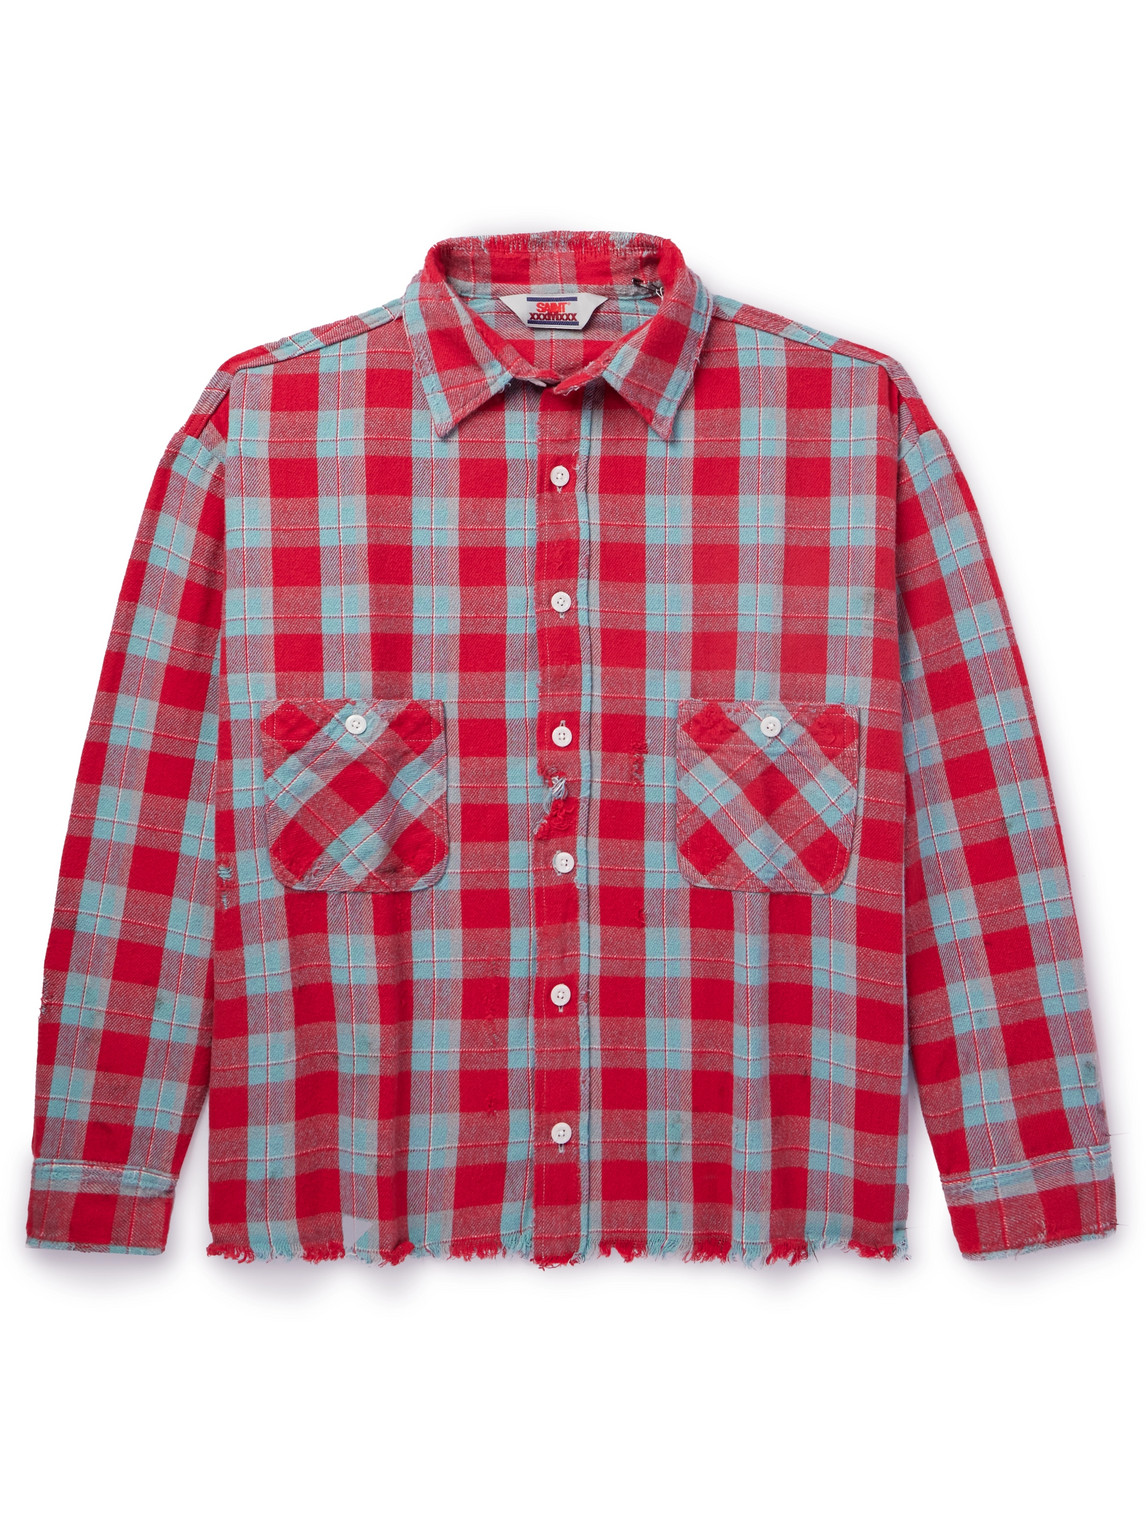 SAINT Mxxxxxx - Distressed Checked Cotton-Flannel Shirt - Men - Red - M von SAINT Mxxxxxx